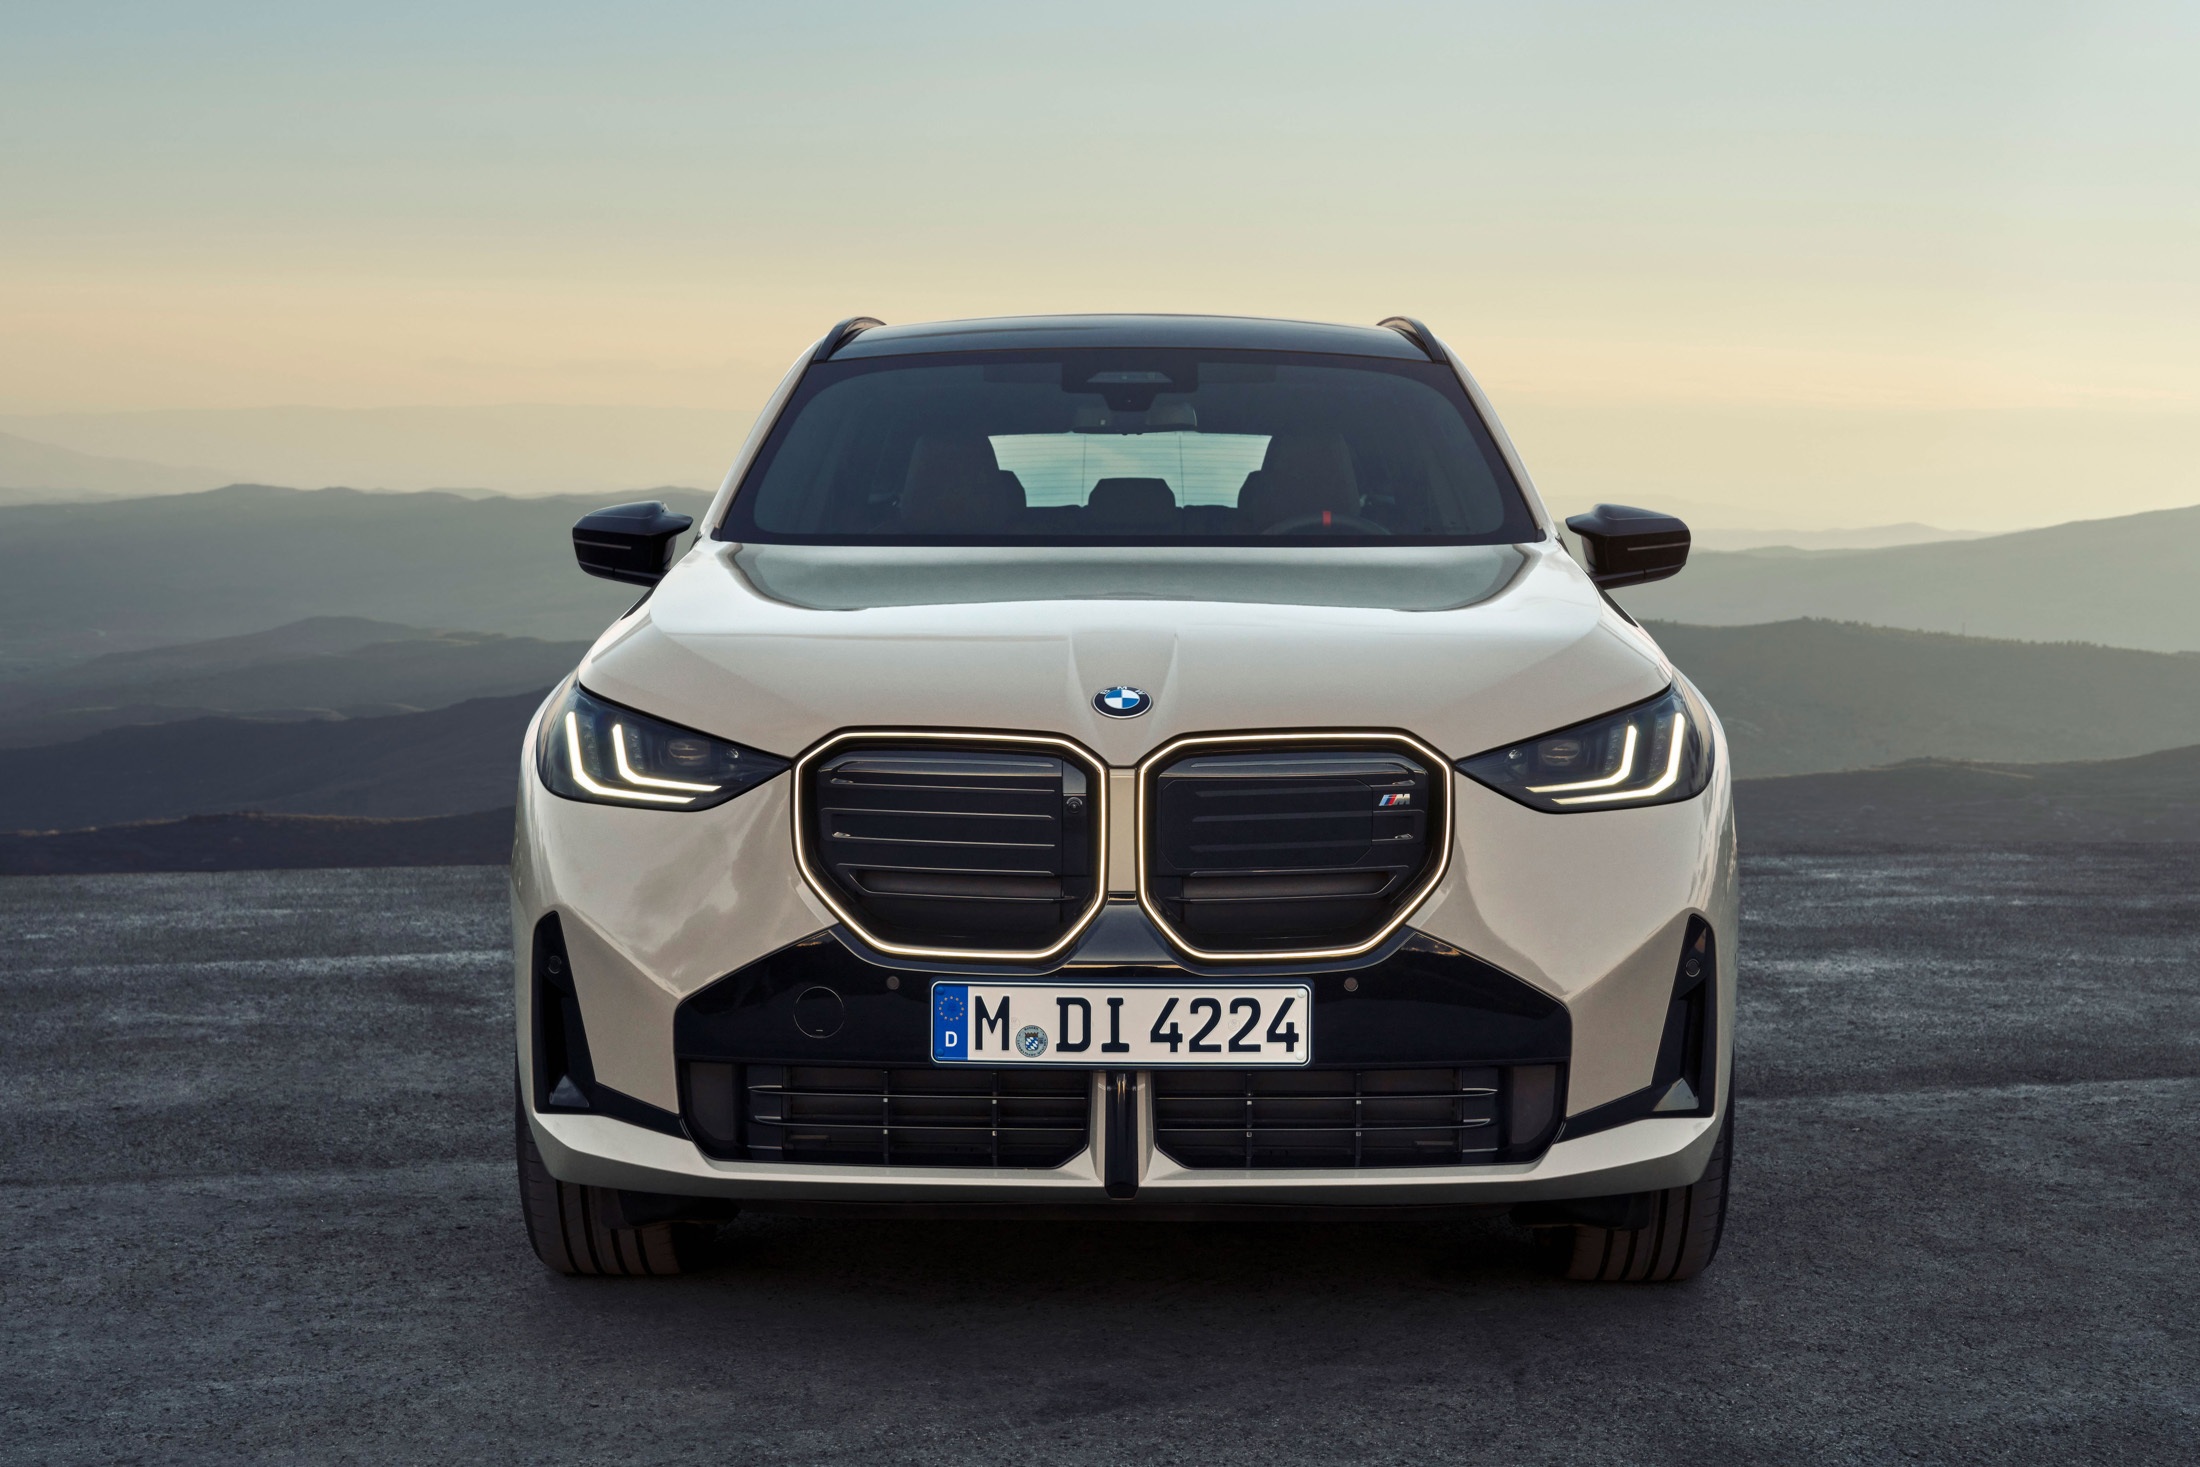 View - BMW X3 thế hệ mới ra mắt với động cơ hybrid mạnh mẽ hơn | Báo Dân trí